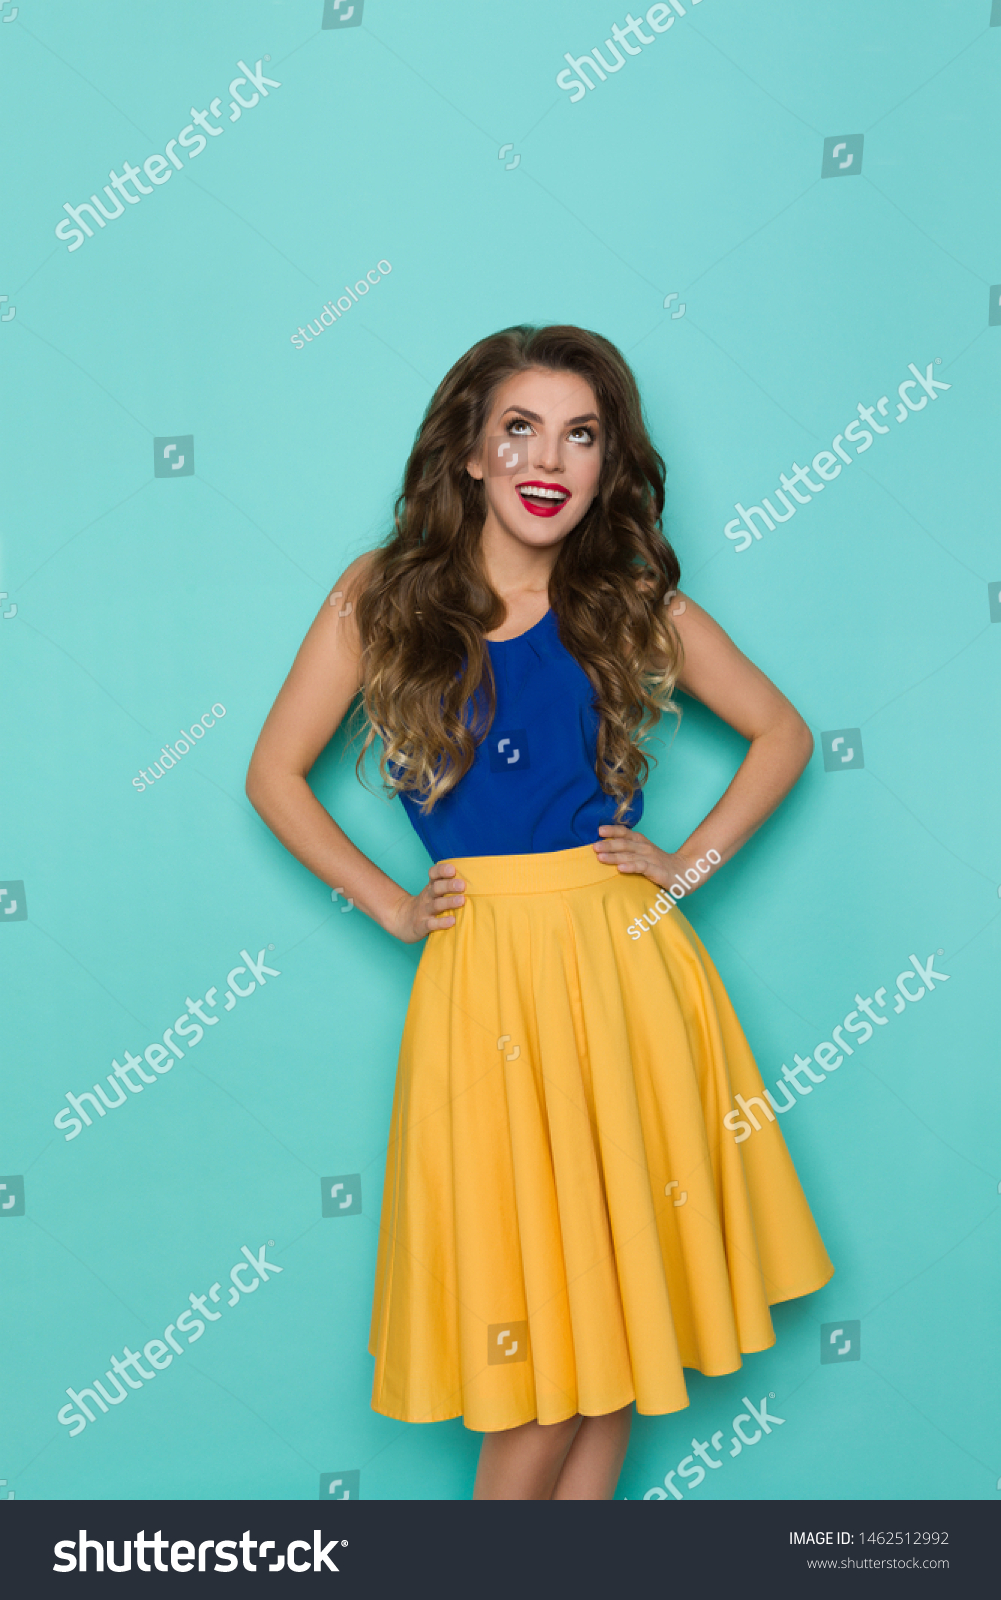 mustard skirt blue top